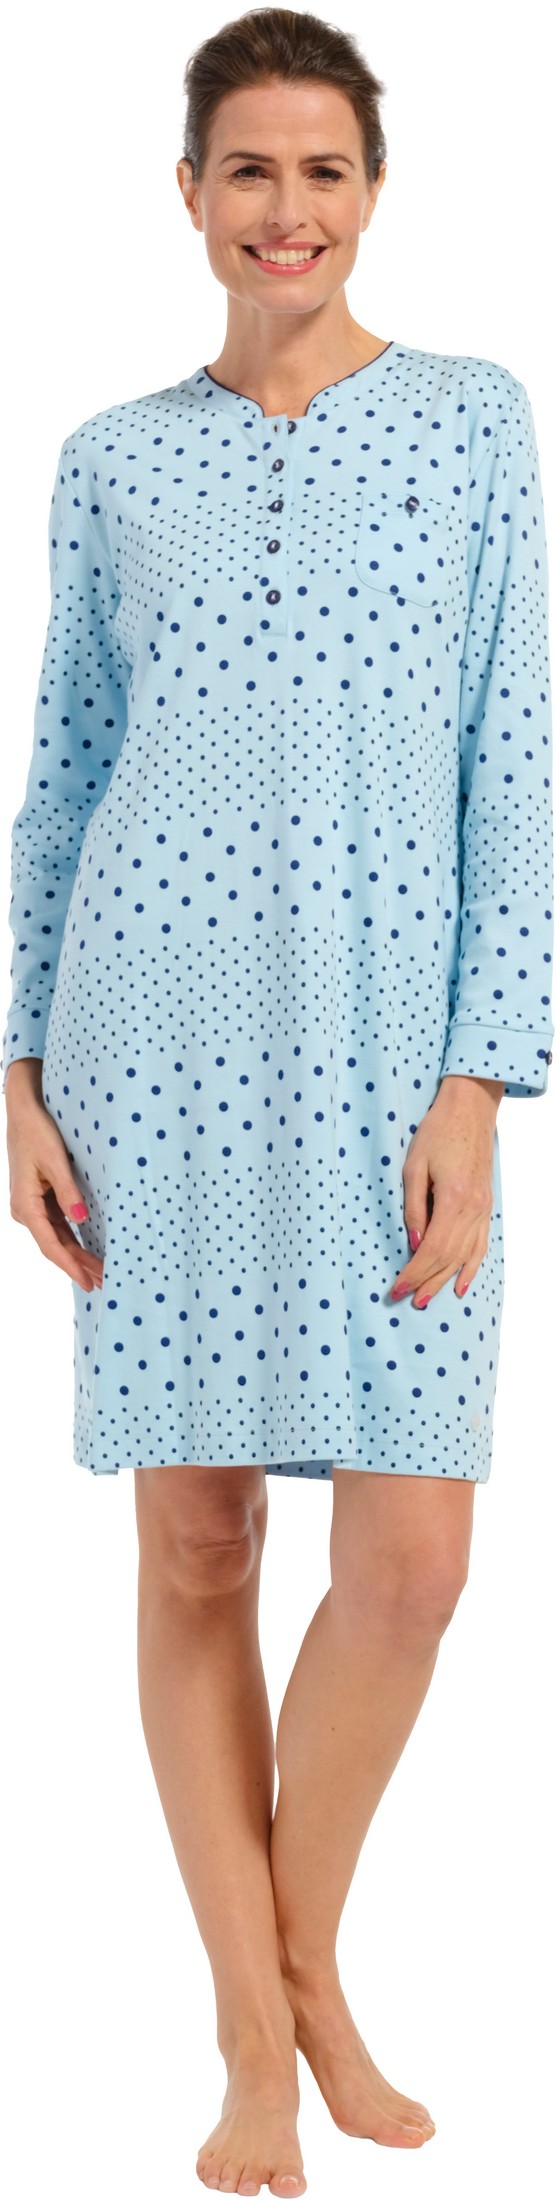 Pastunette dames nachthemd 10232-162-4 - Blauw - 46